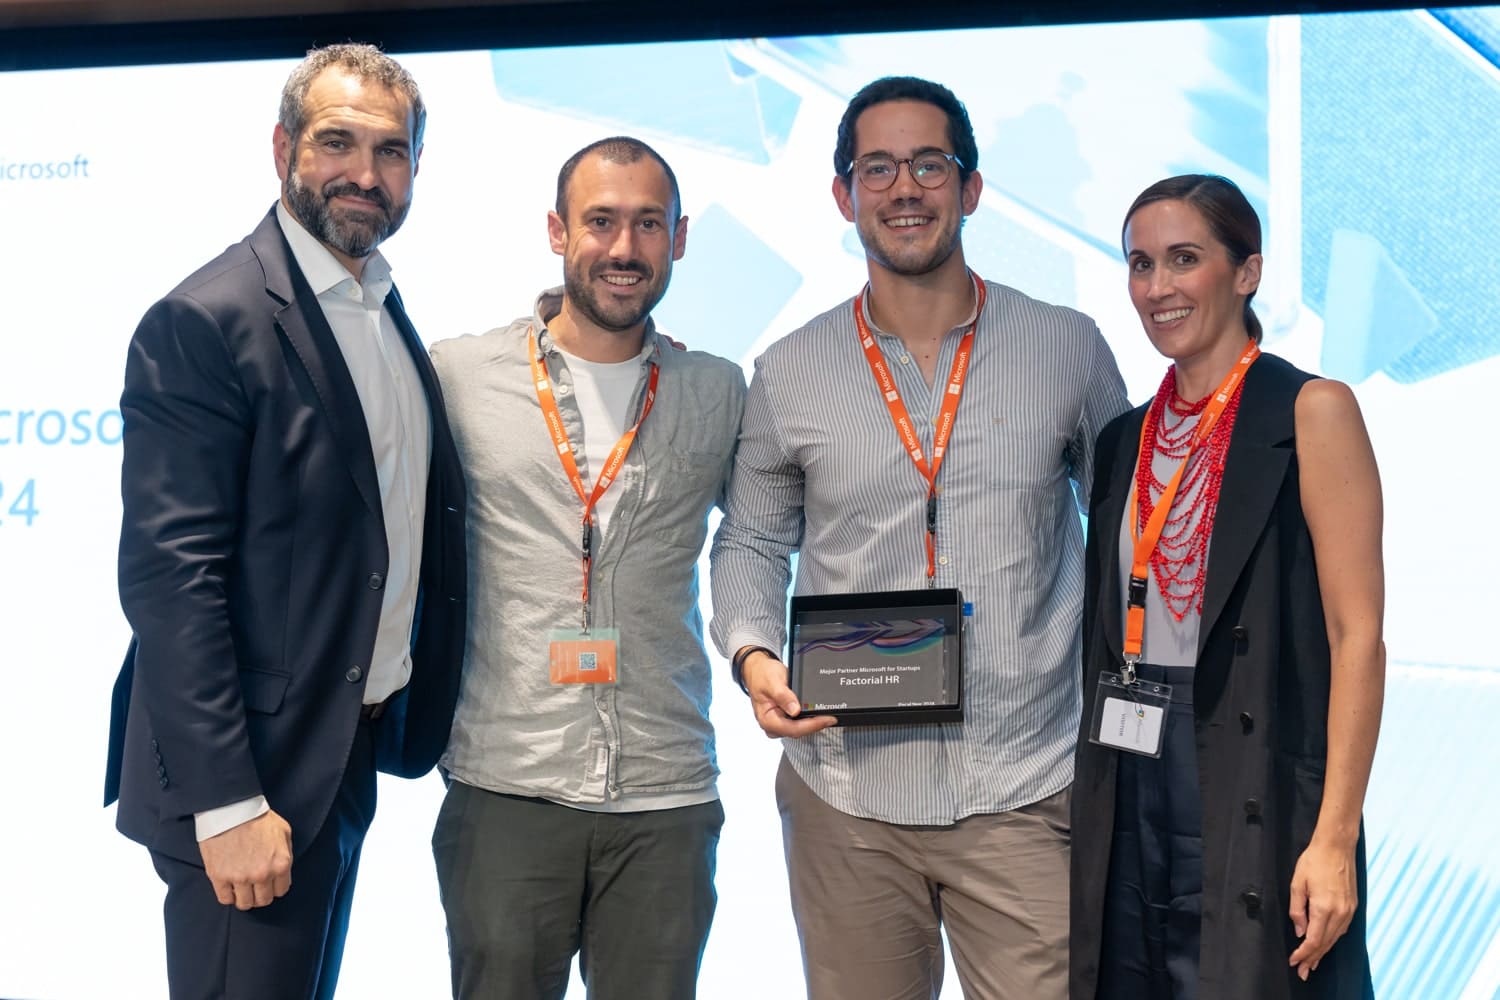 Laura Searle, Marcel Queralt y Marc Conesa reciben el premio de Microsoft a Startup del año en representación de Factorial